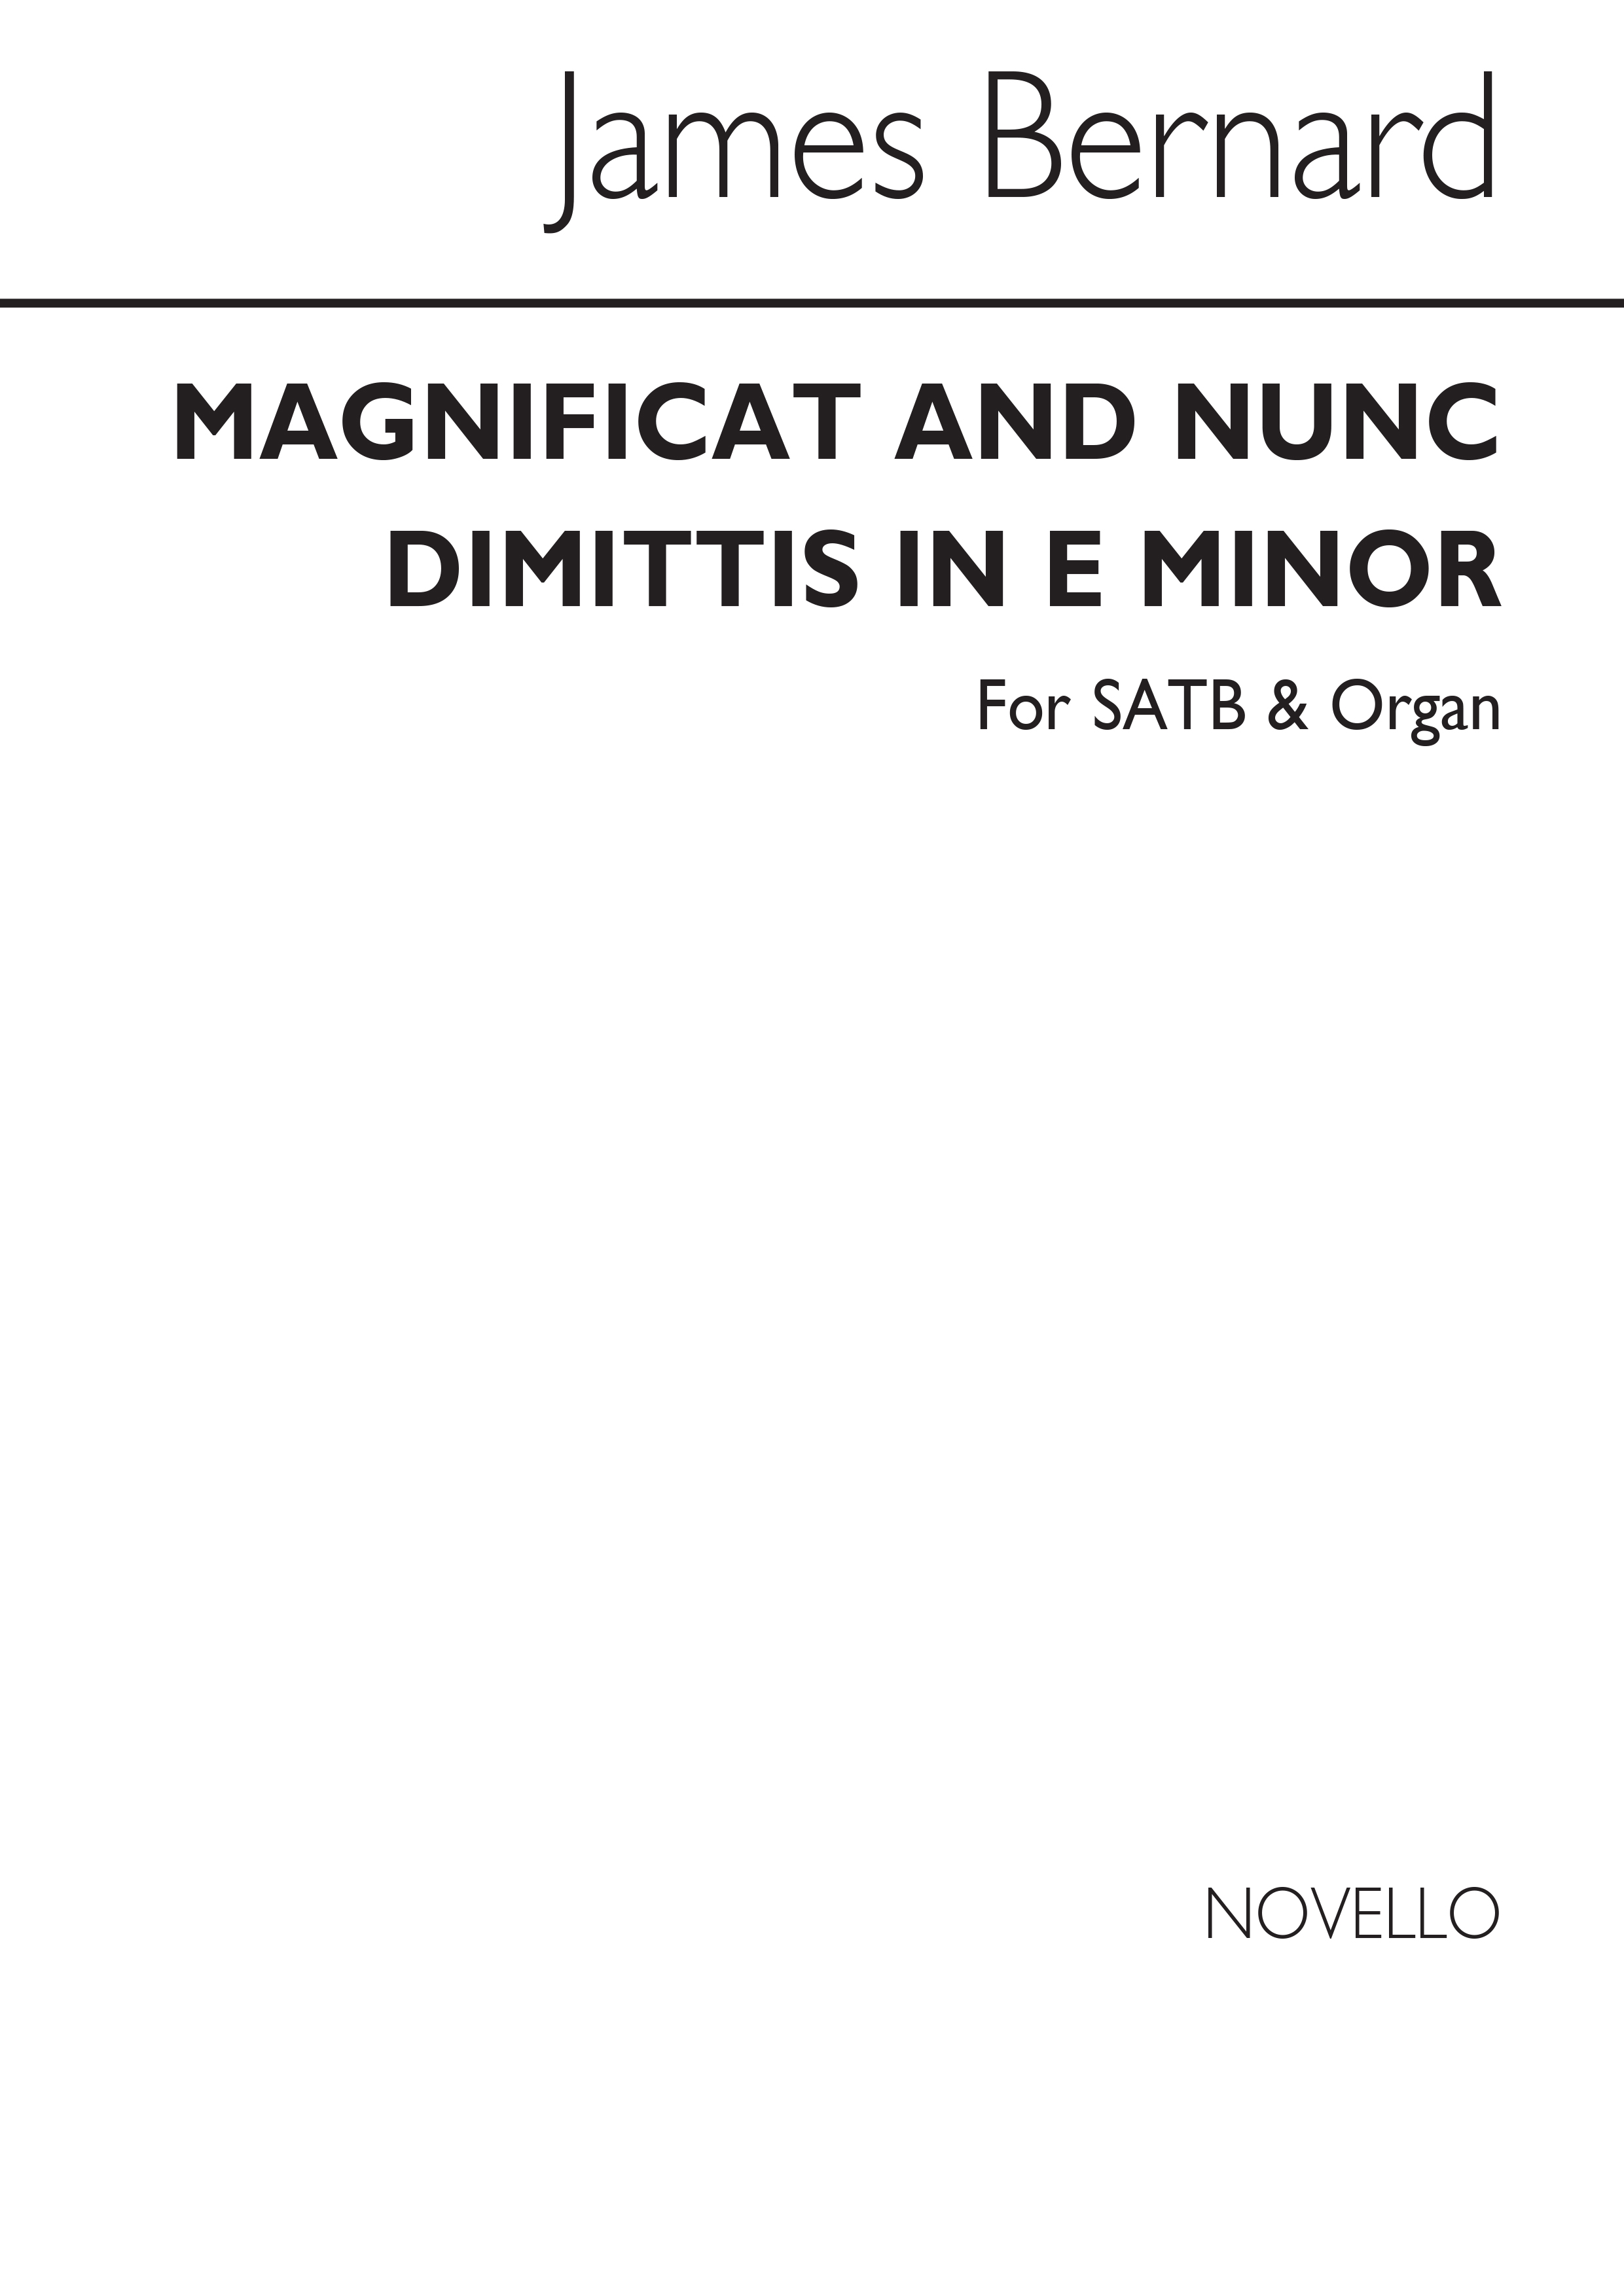 James Bernard: Magnificat And Nunc Dimittis SATB/Organ